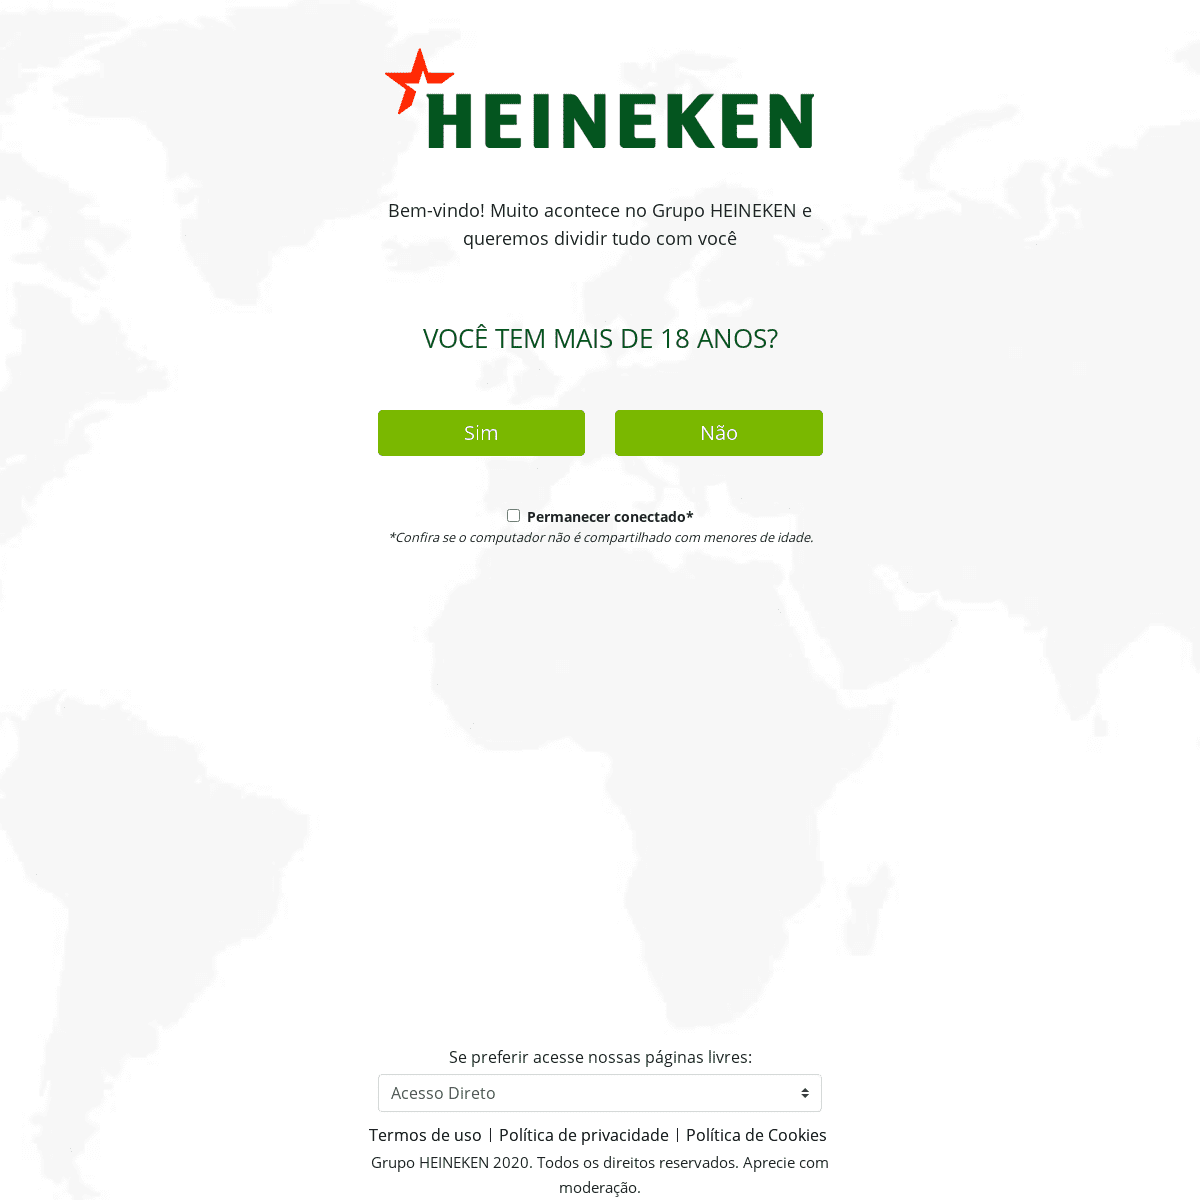 A complete backup of https://heinekenbrasil.com.br